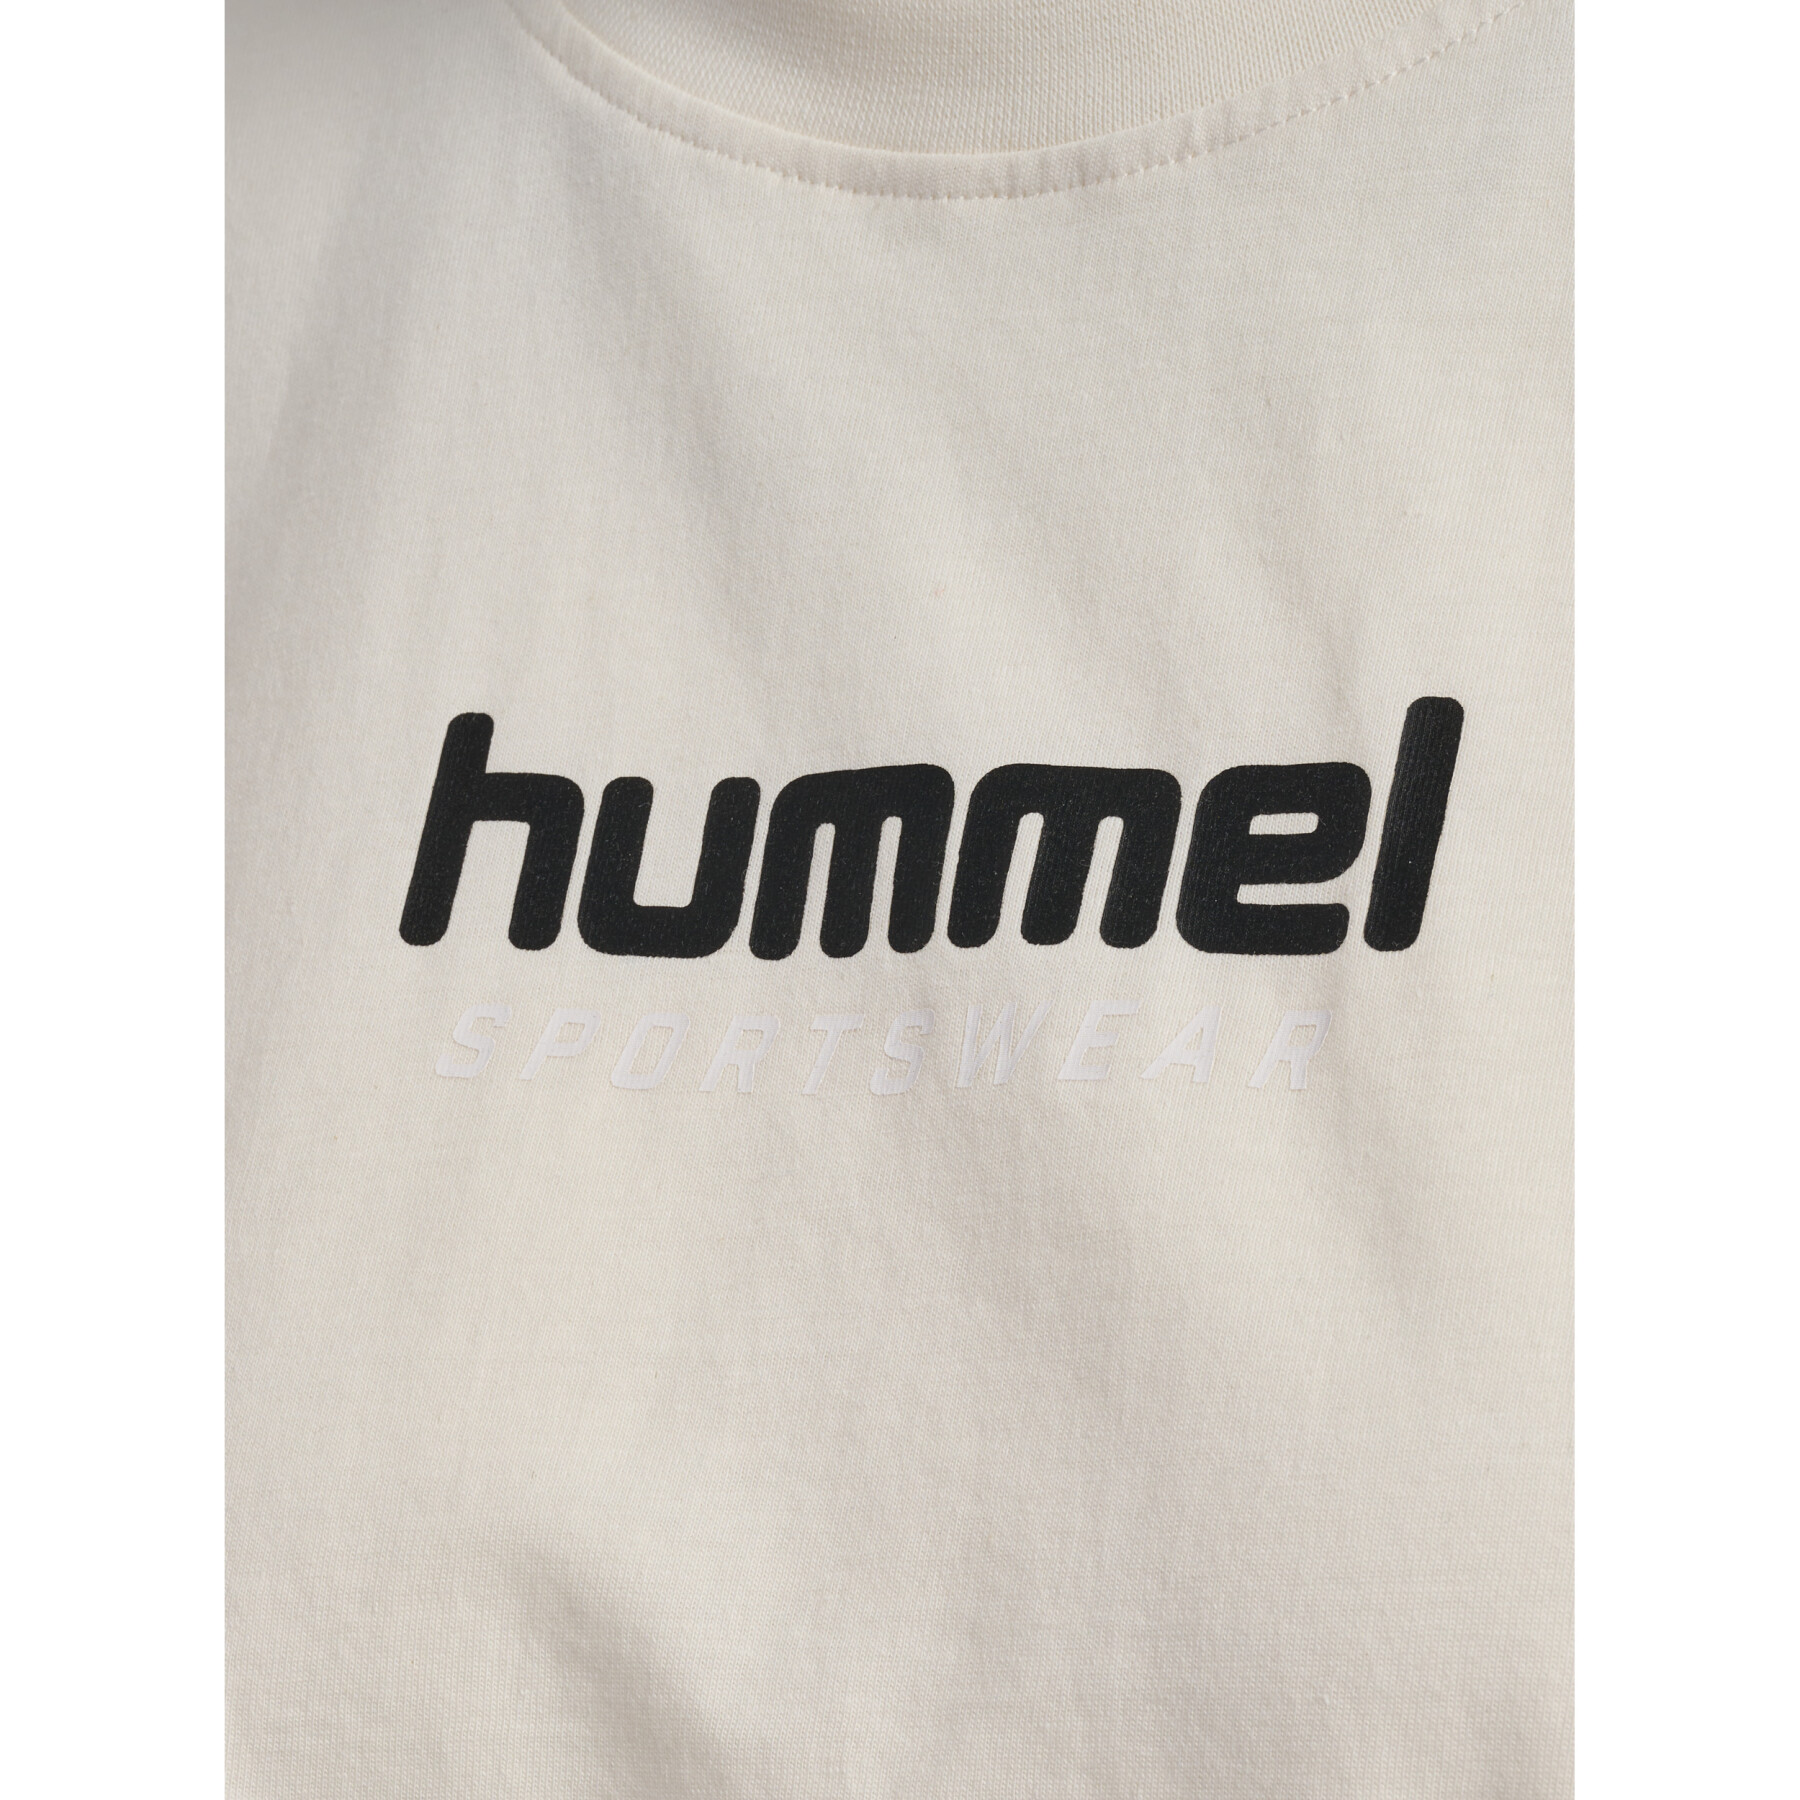 T-shirt crop femme Hummel Lgc Malu